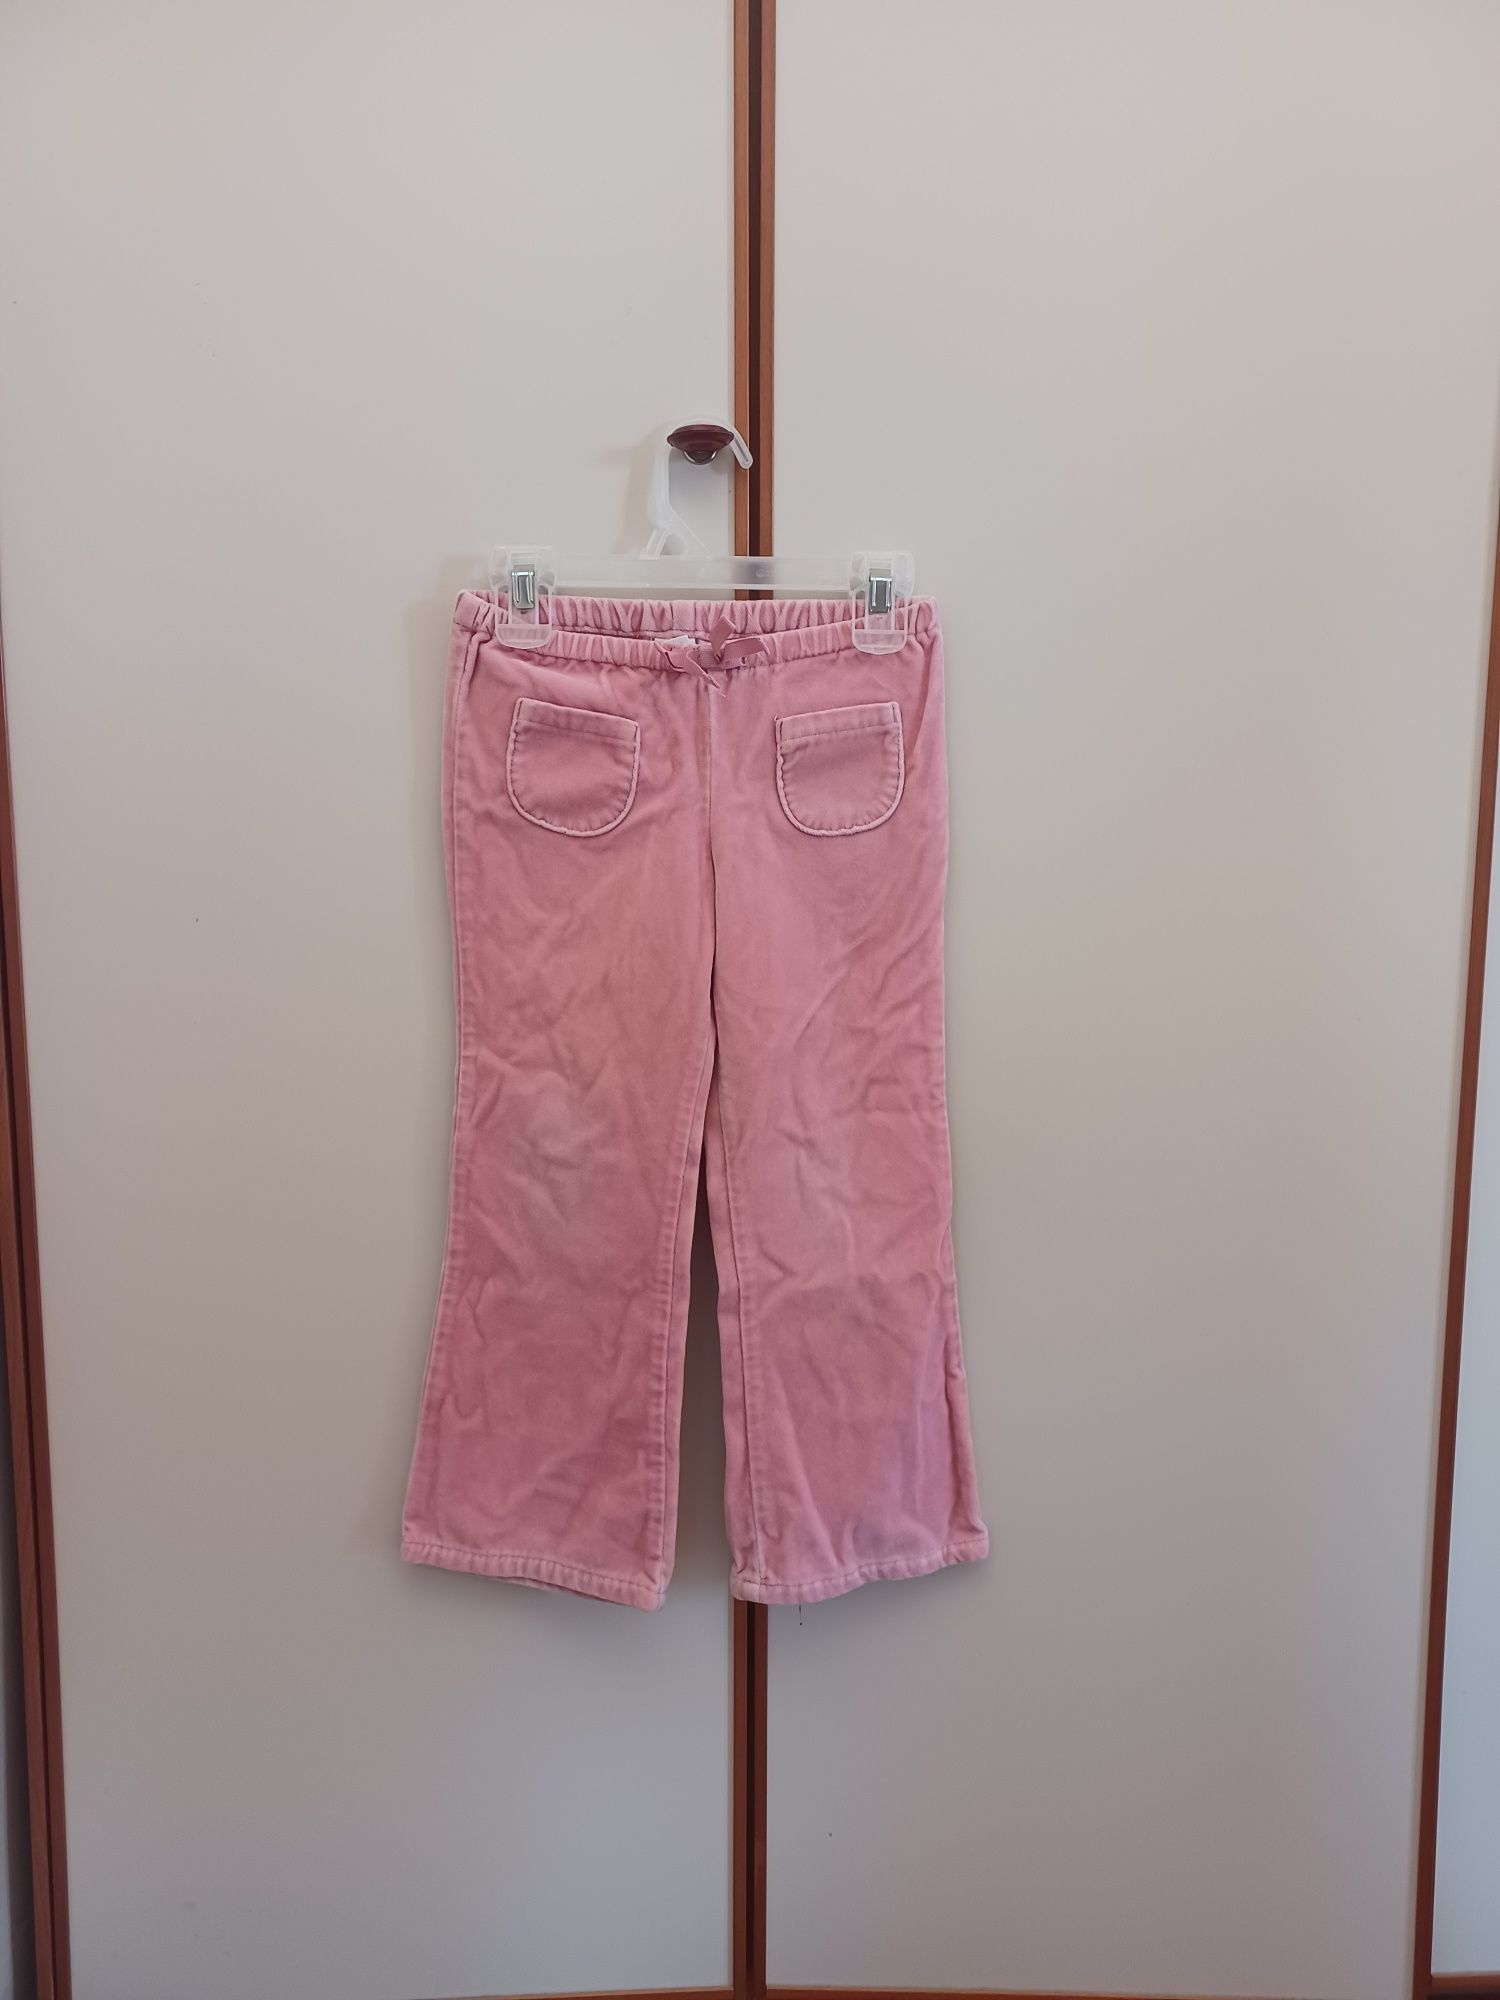 Spodnie Gap dla dziewczynki na ok 5 lat